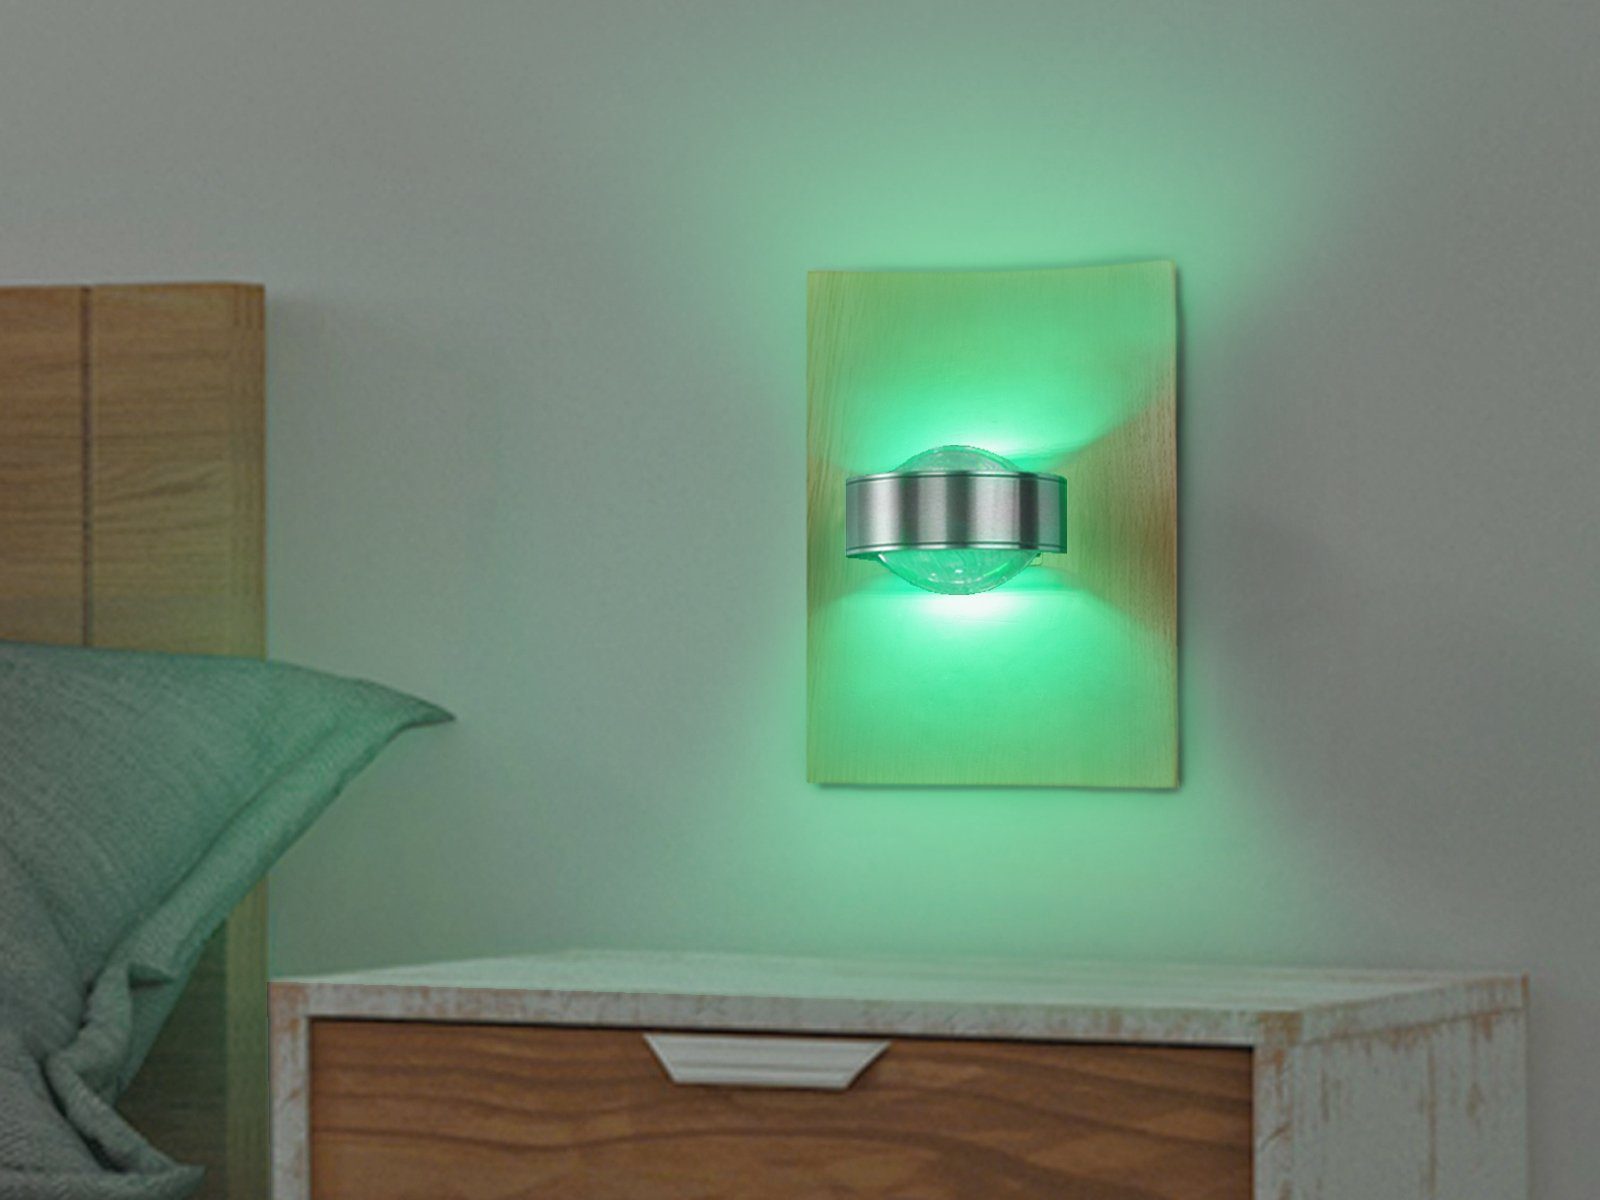 LED ausgefallen einstellbar, meineWunschleuchte 2er Farbwechsel, indirekte Wand-Beleuchtung Eiche-Brett Lichtfarbe LED fest SET integriert, Wandleuchte, Holz-Lampen Warmweiß-Neutralweiß